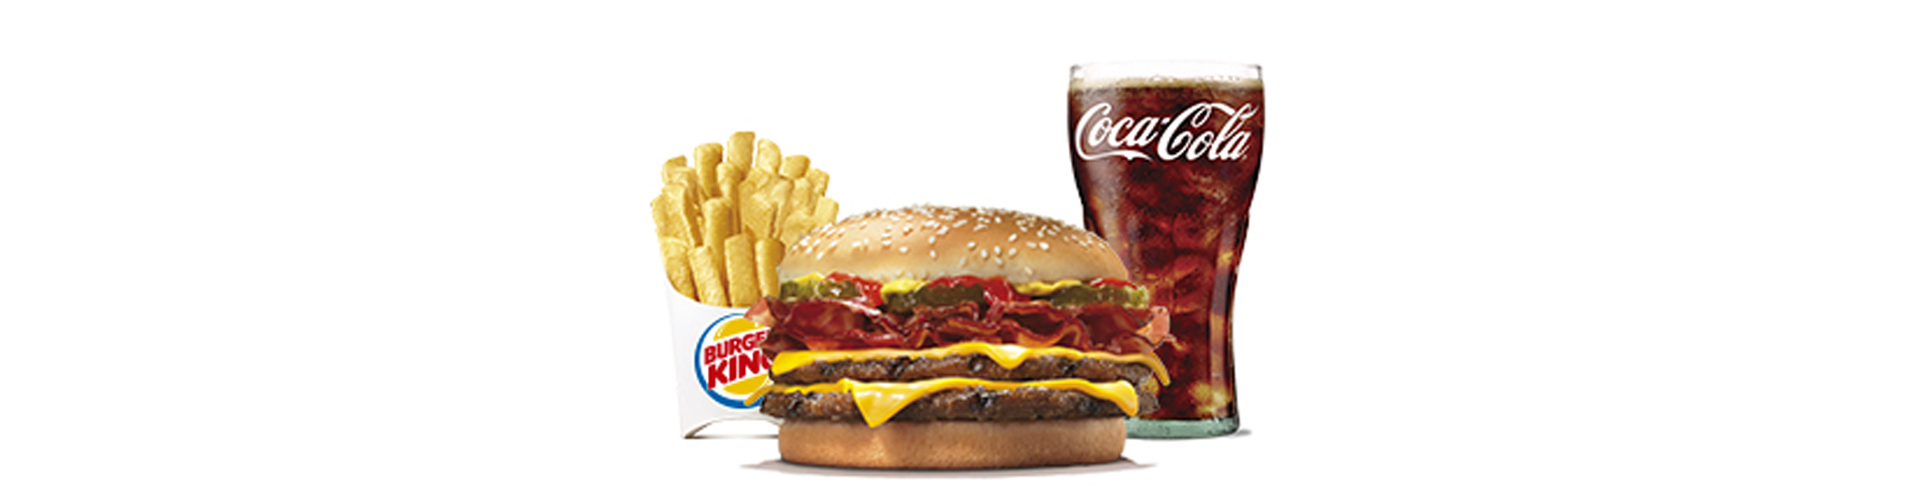 menu-doble-cheese-bacon-burgerking-40001718-cocacola-light-aros